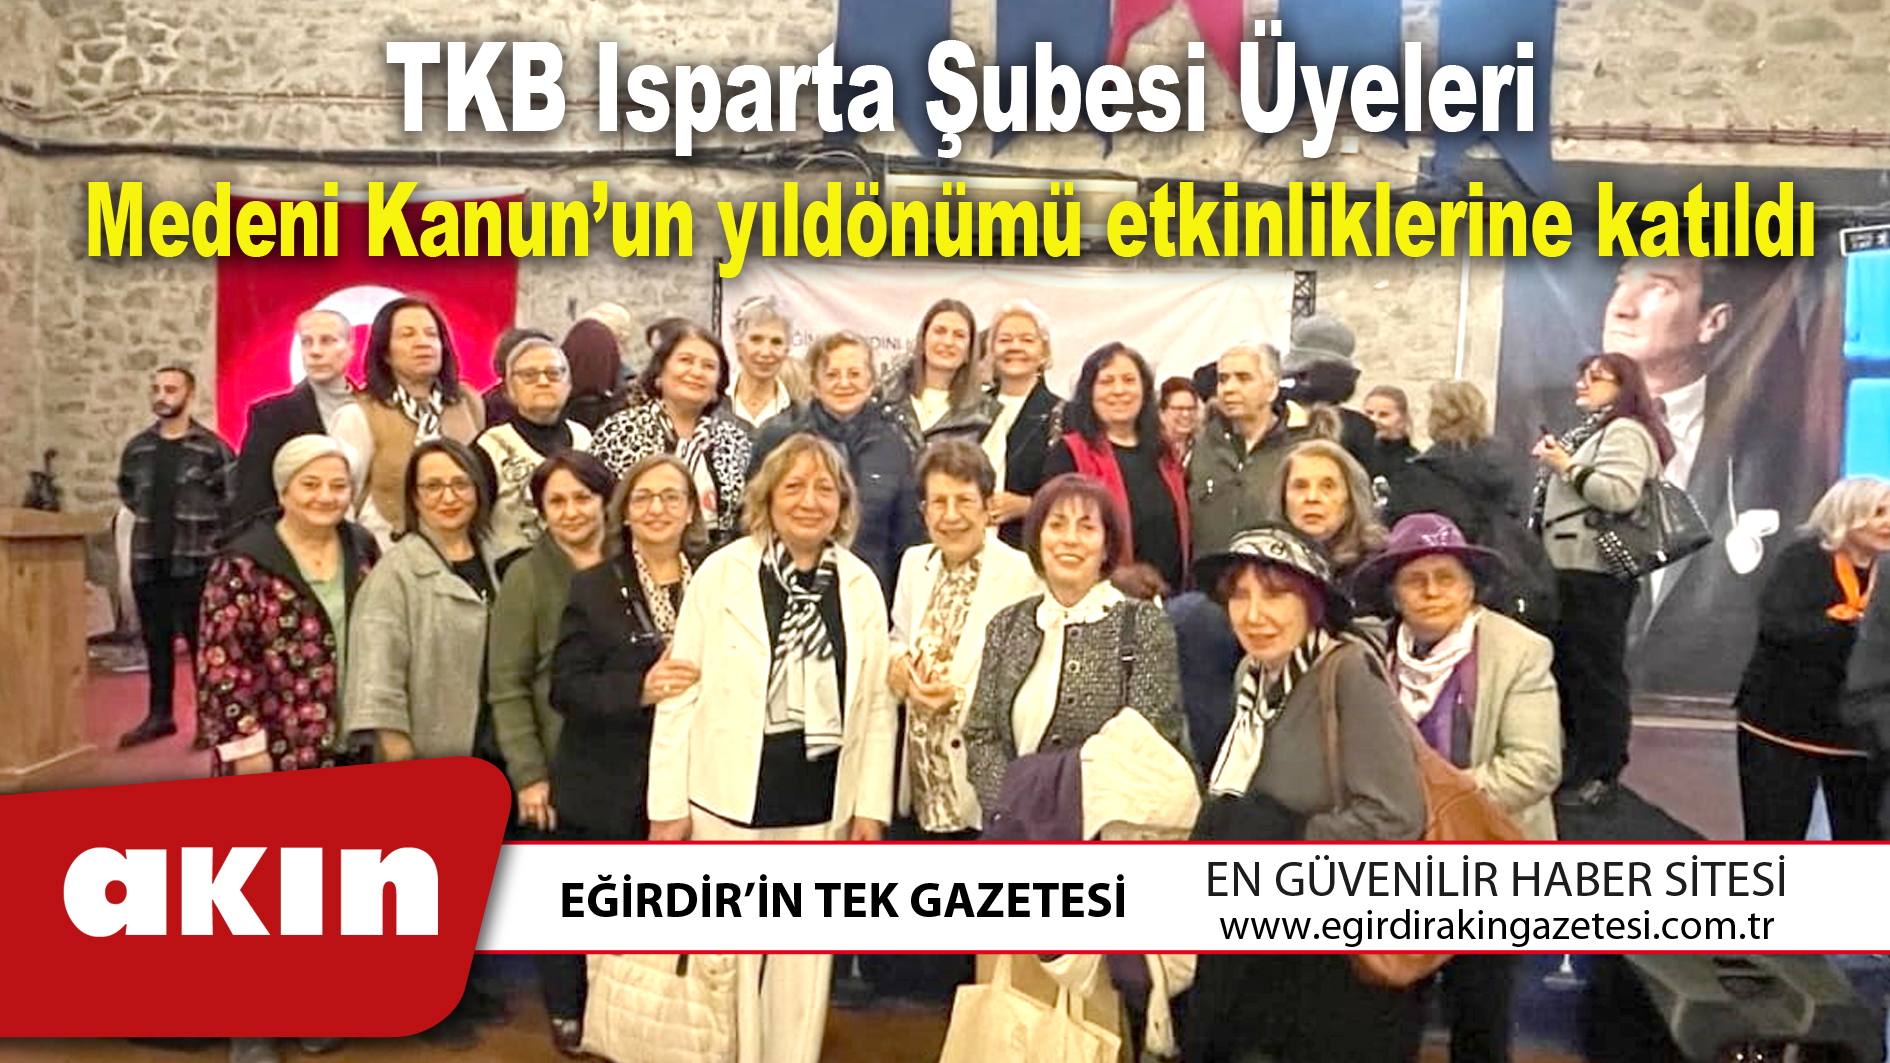 TKB Isparta Şubesi Üyeleri Medeni Kanun’un yıldönümü etkinliklerine katıldı